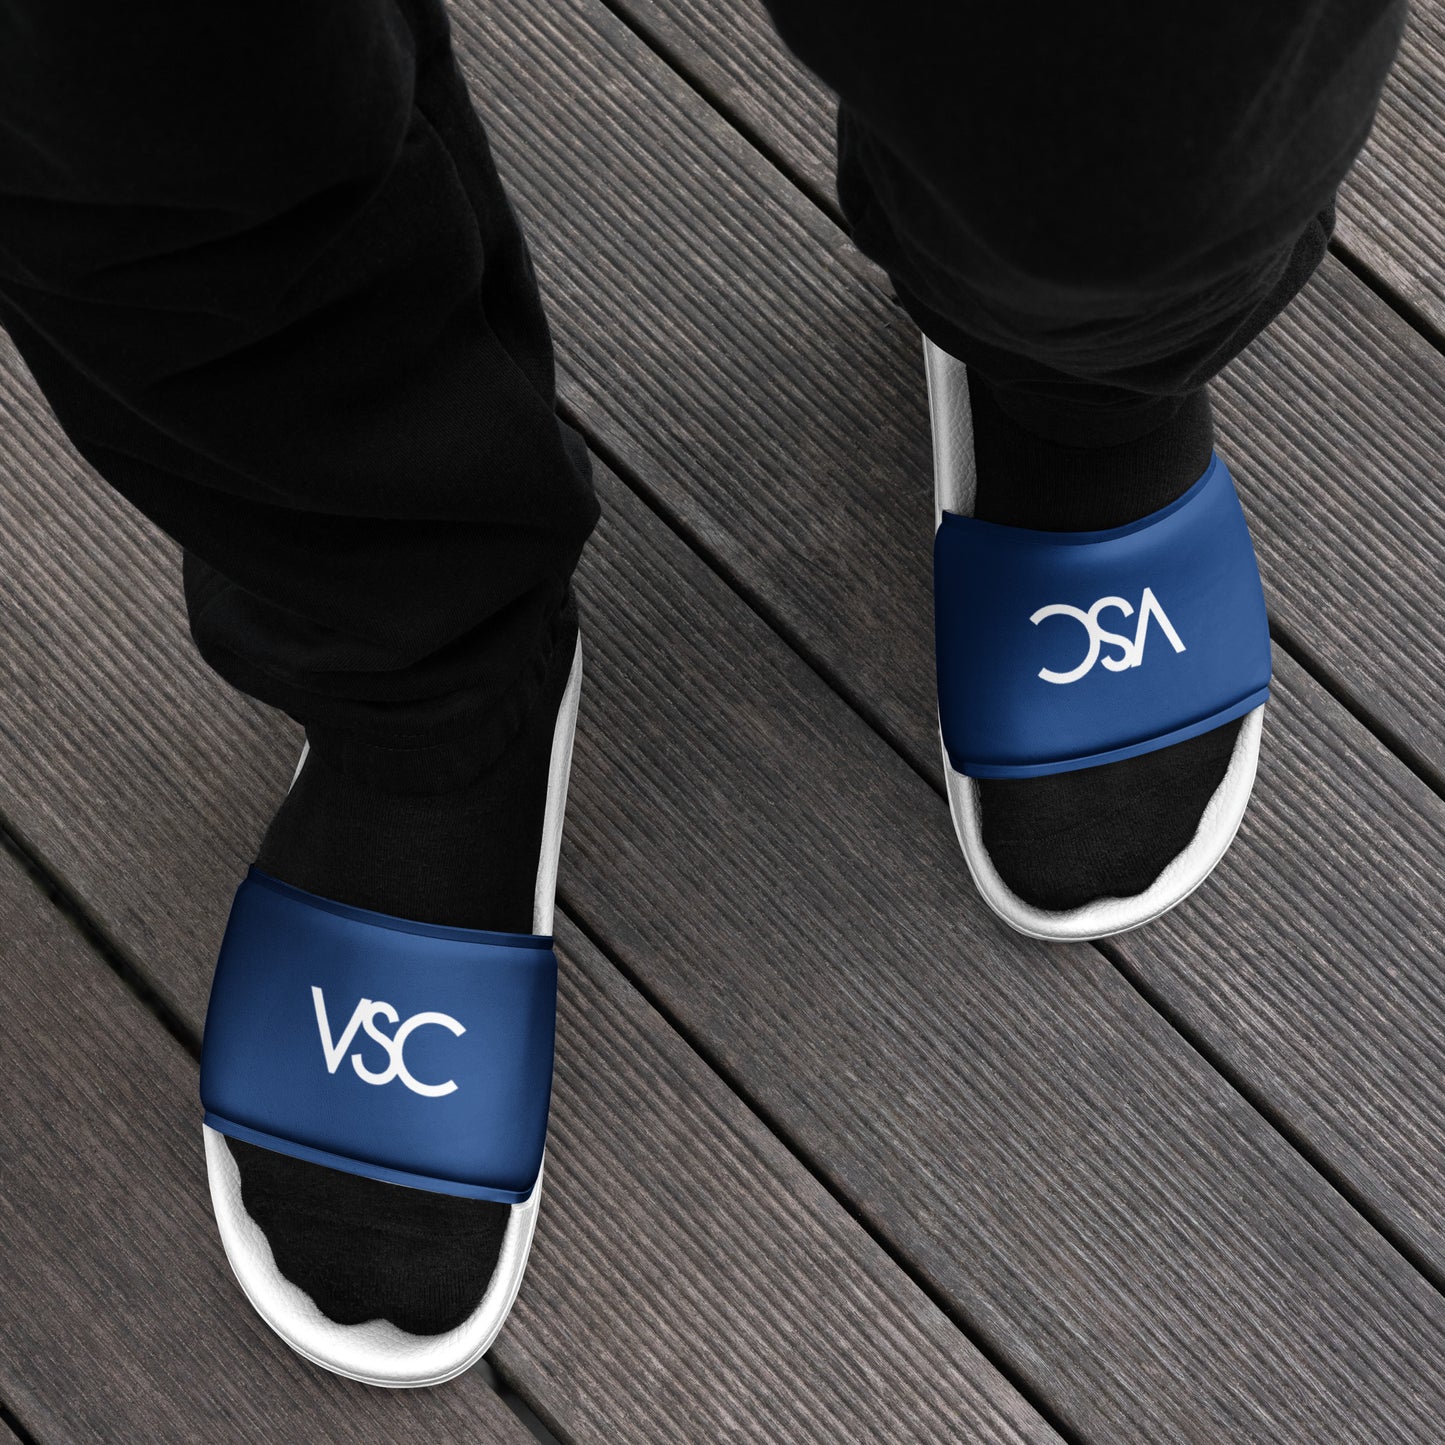 VSC Men’s Blue slides